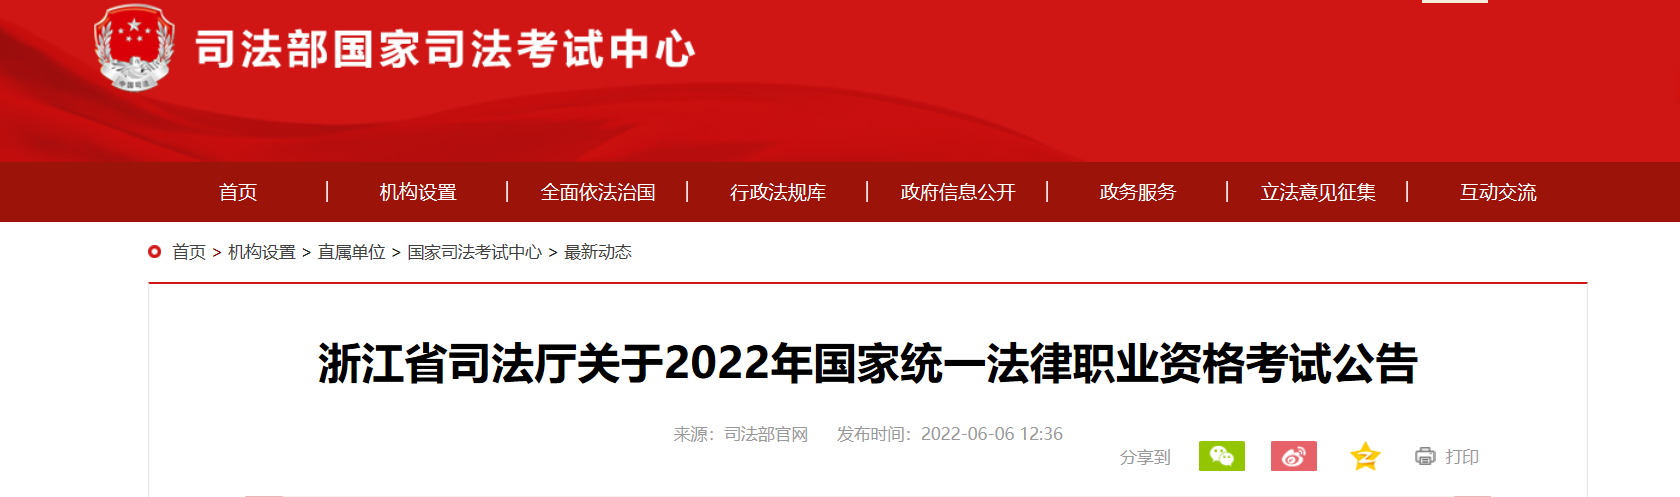 2022年浙江国家统一法律职业资格考试资格审核及相关公告